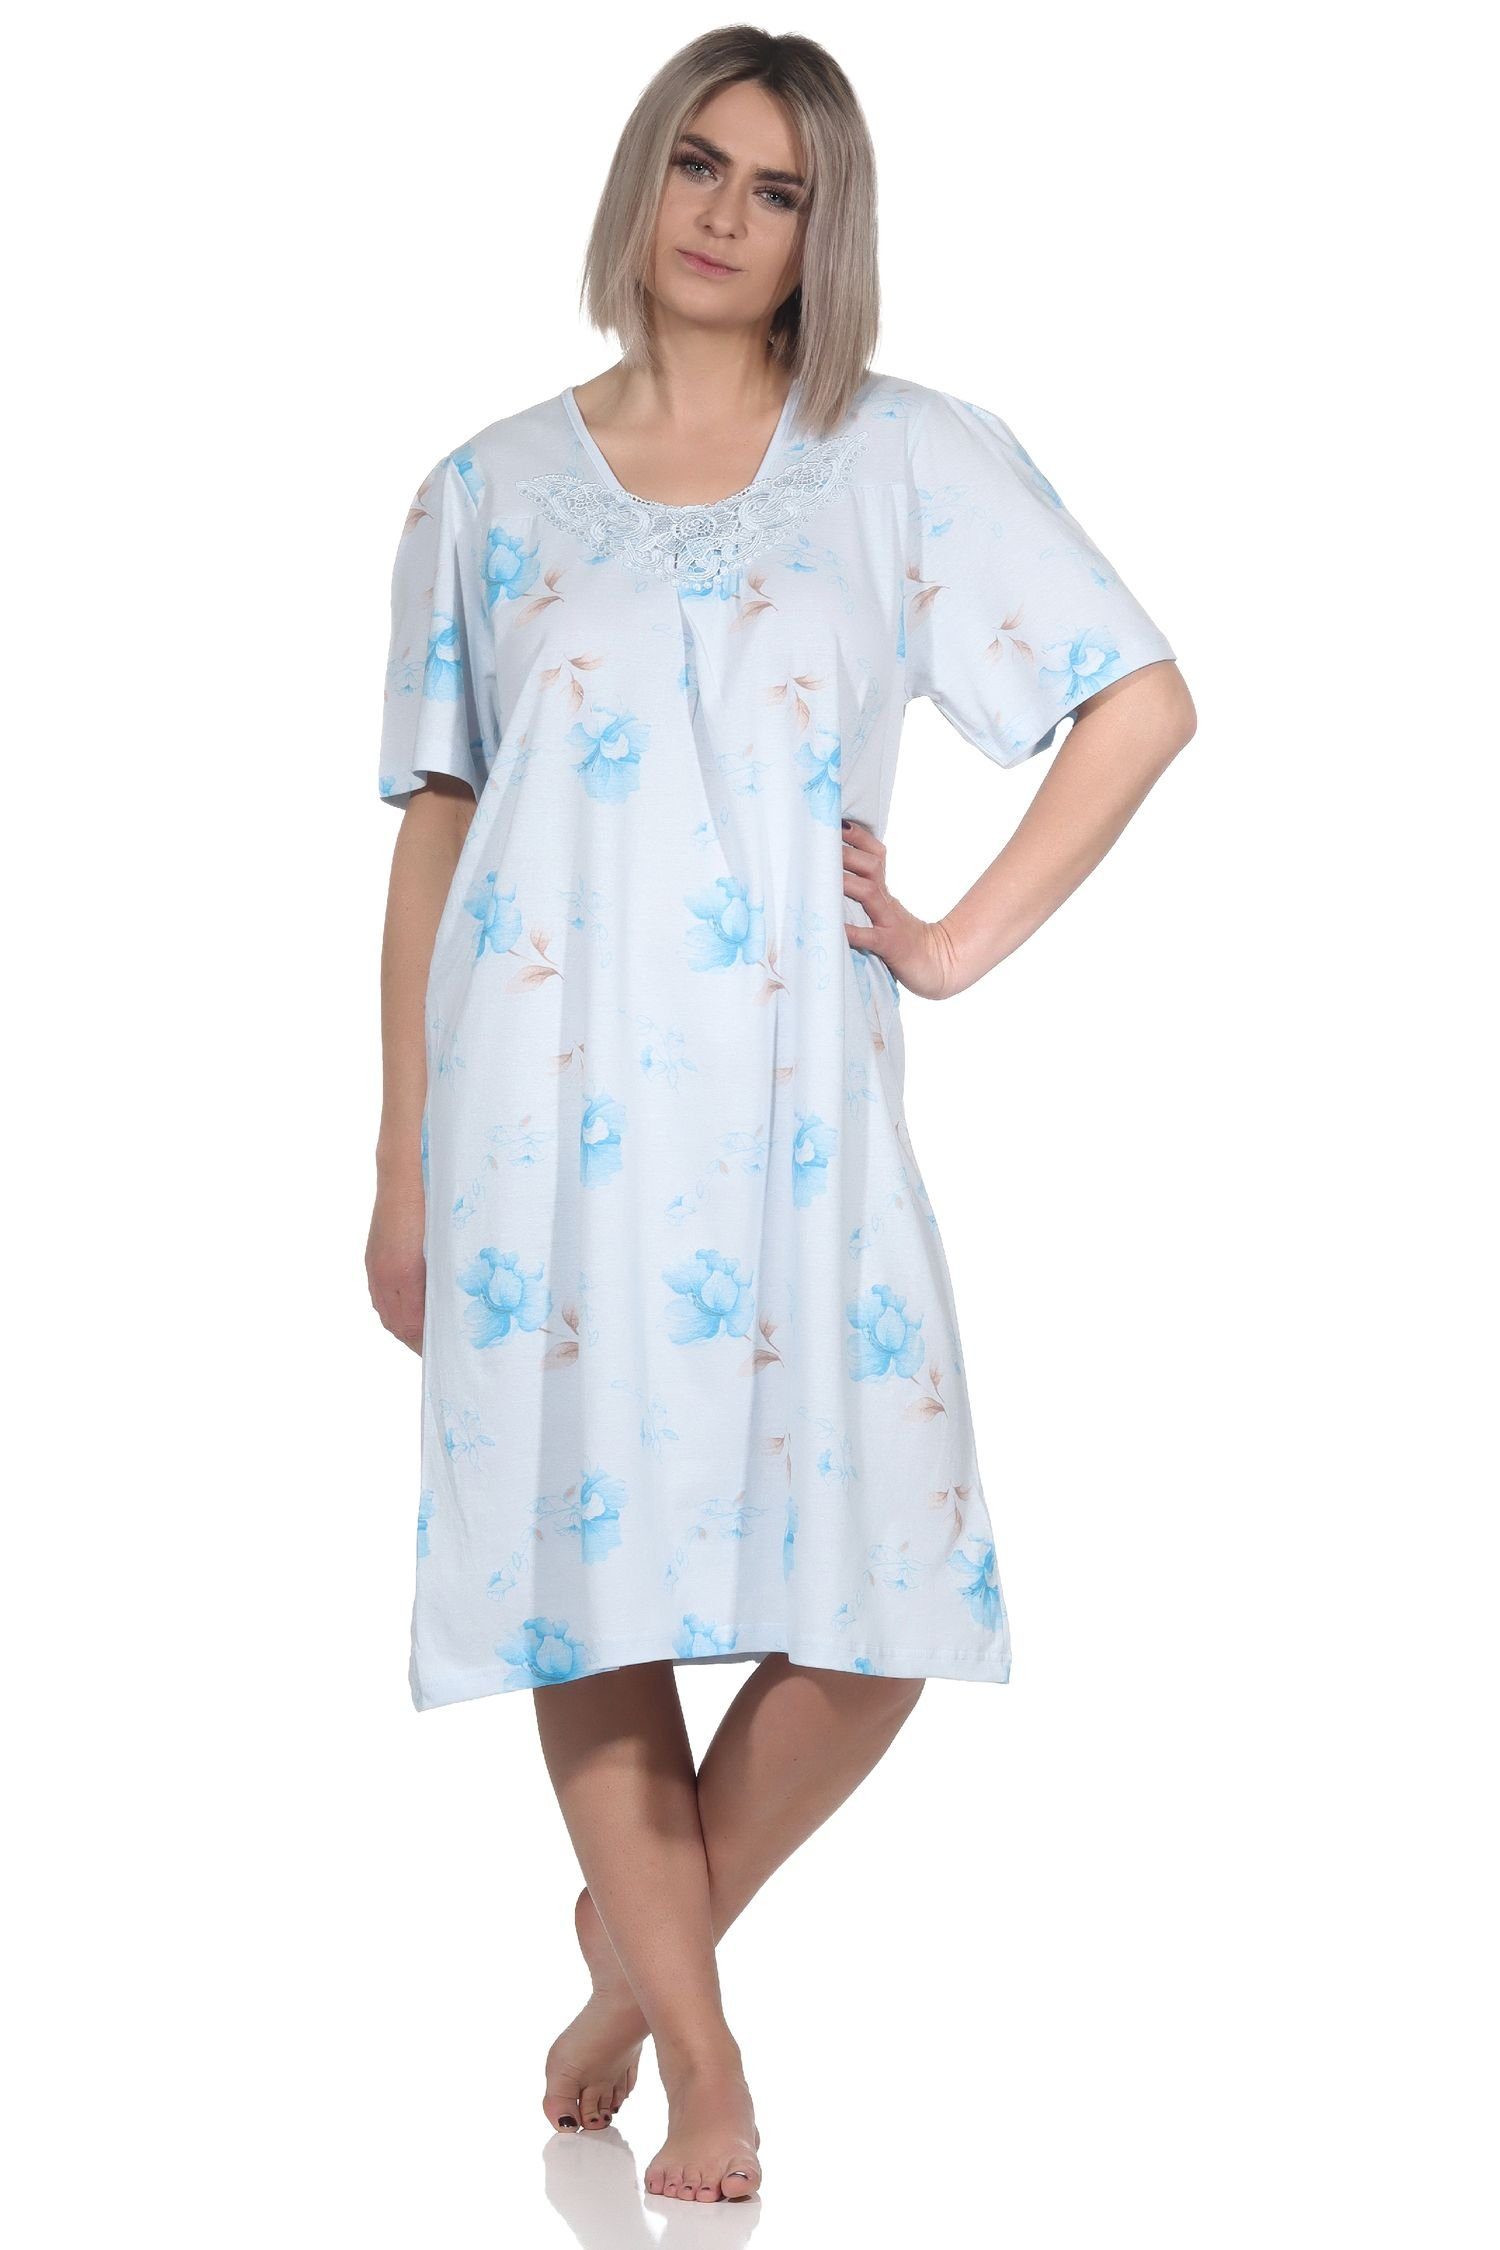 Normann Nachthemd Frauliches Damen Nachthemd kurzarm mit Spitze und Knopfleiste am Hals hellblau